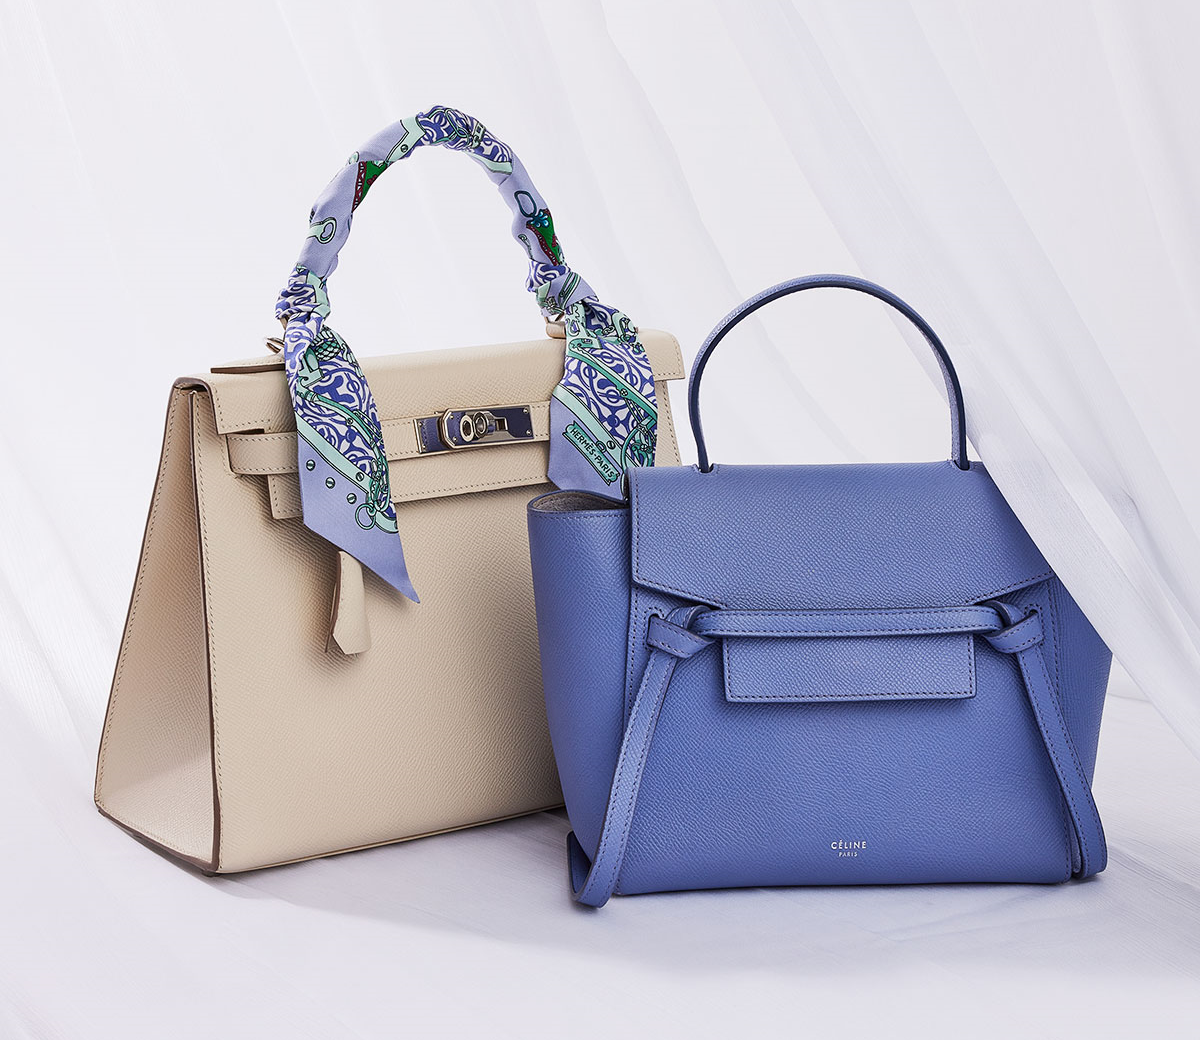 Buckhead's Bella Bag offers pre-loved luxury bags